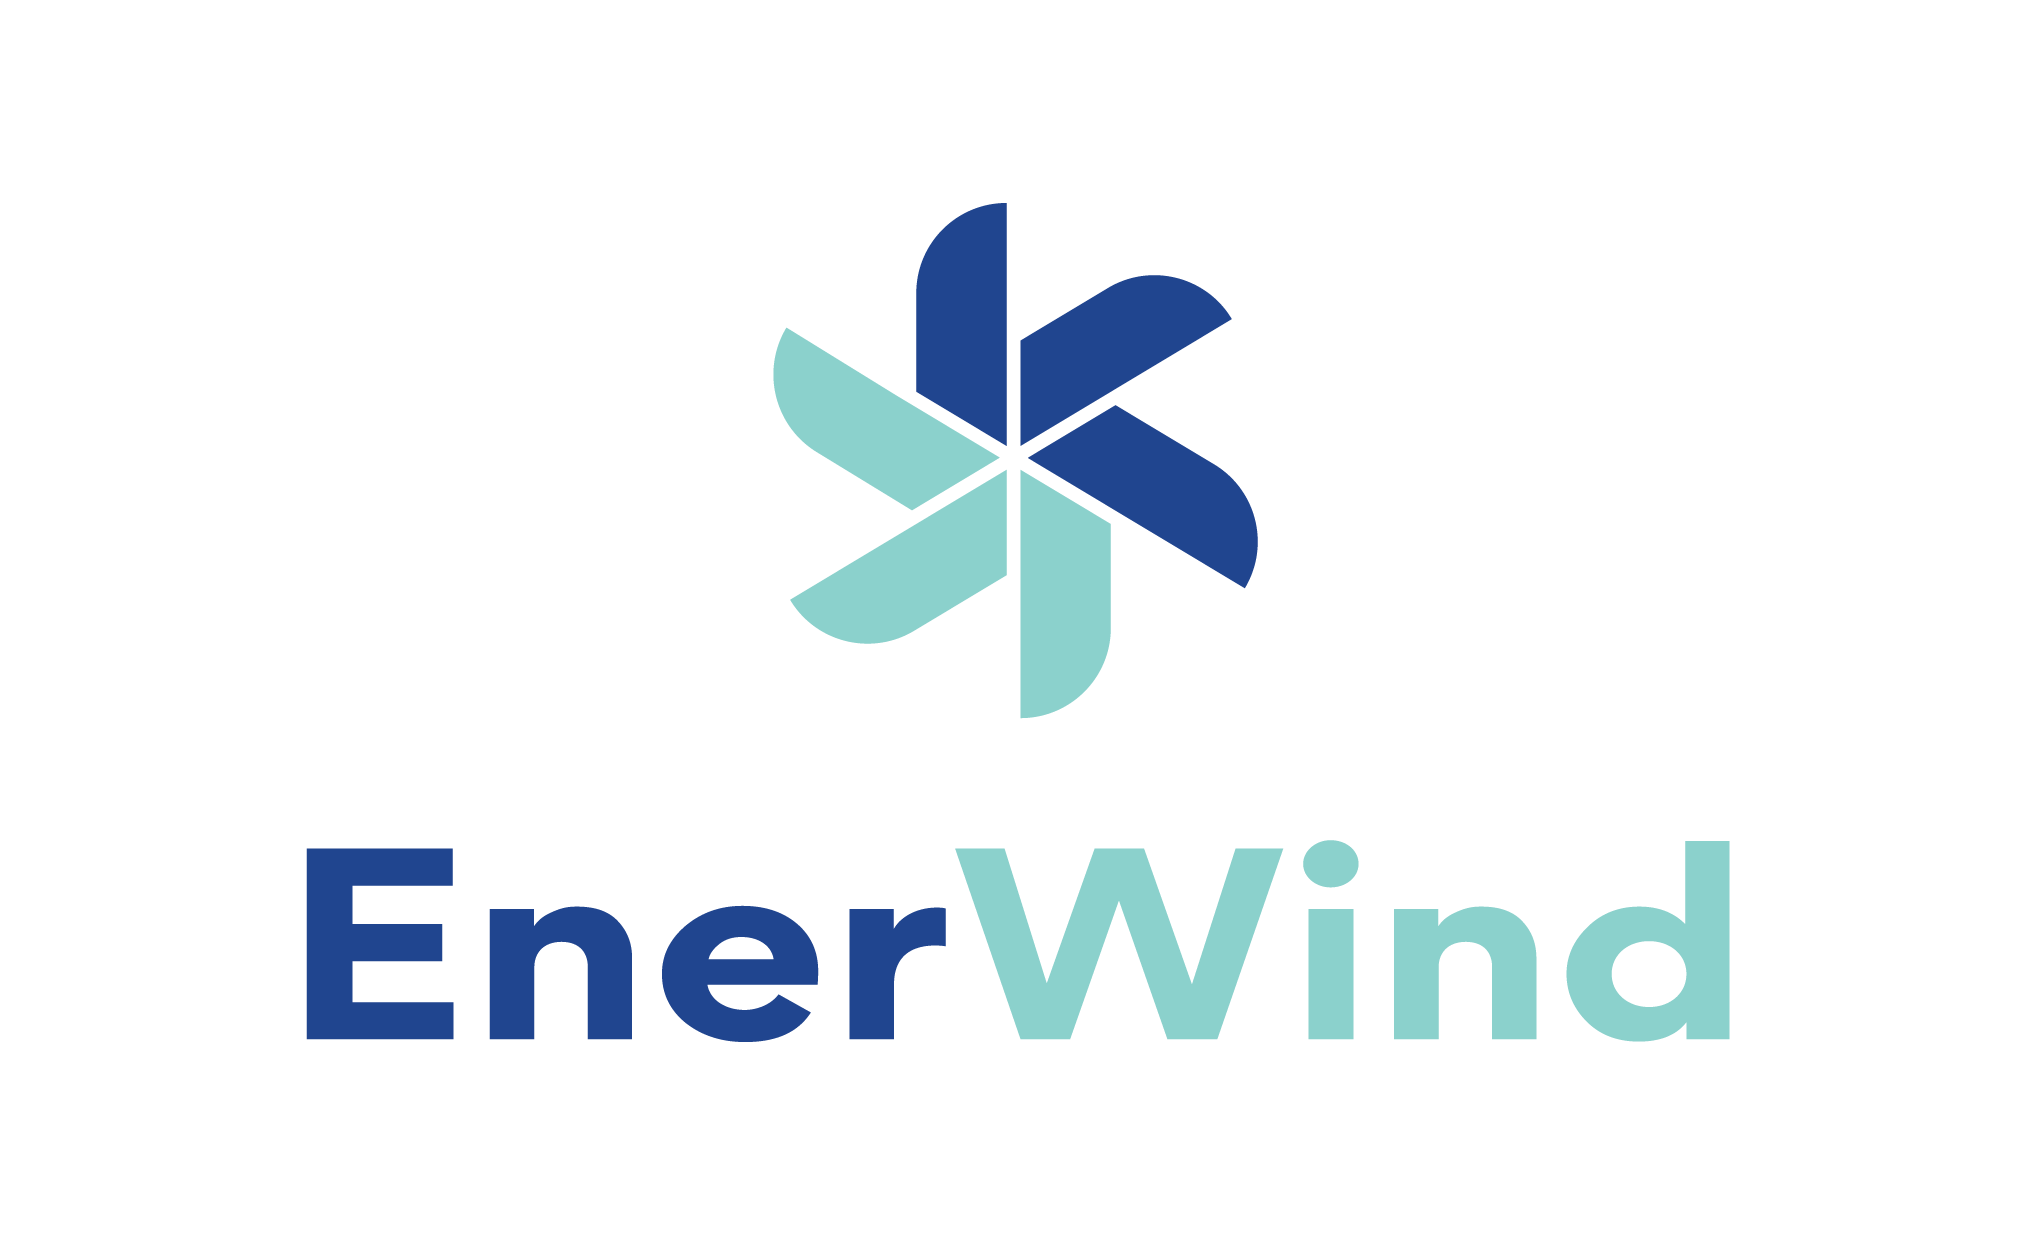 wind power logo